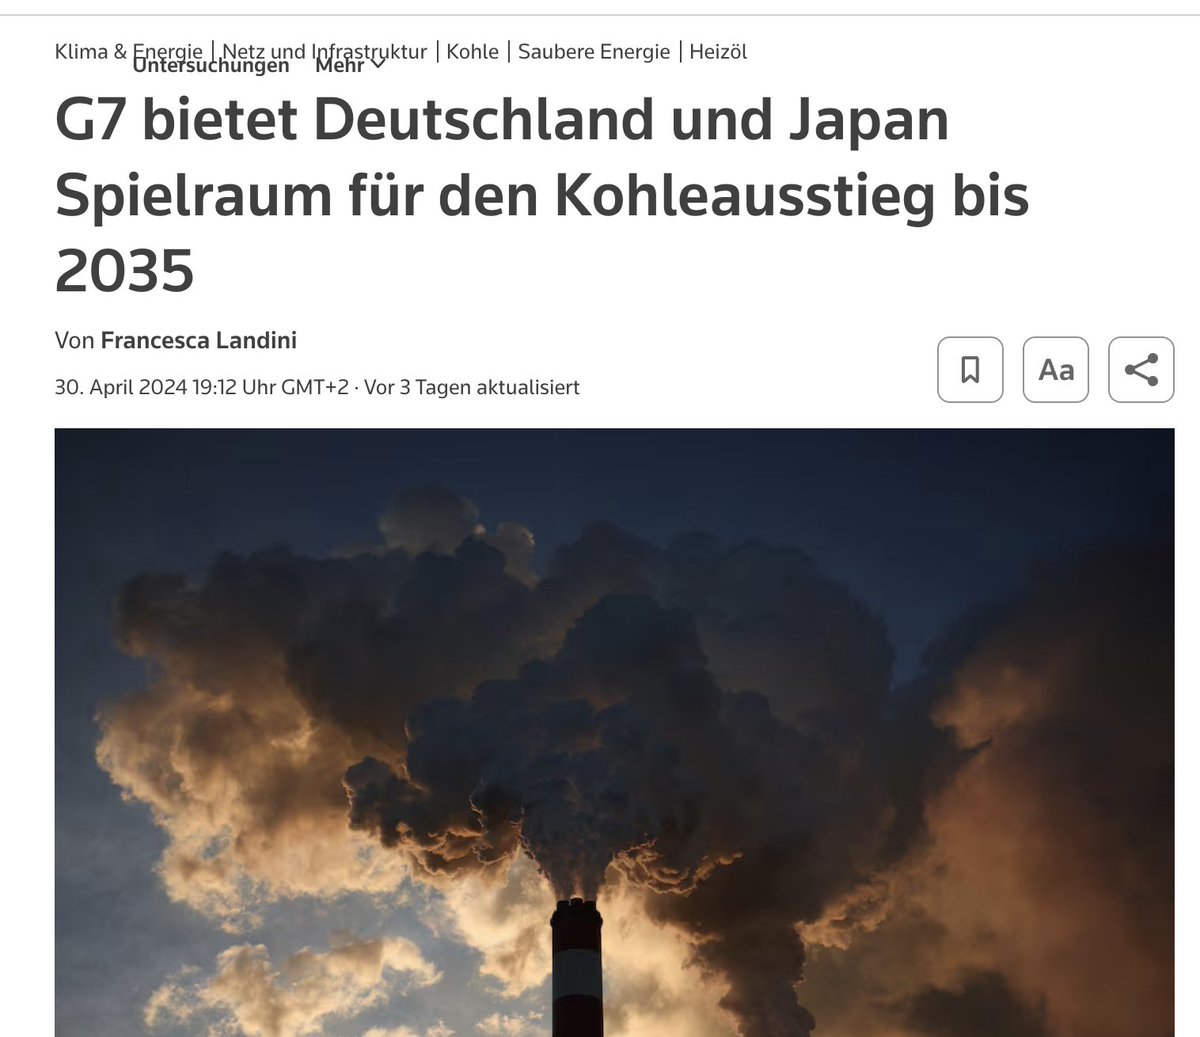 Kohleminister #Habeck s Worte stehen im Widerspruch zu den Taten der Regierung, die um den Weiterbetrieb der Kohlekraftwerke betteln muss. Japan hat gelernt und reaktiviert leider viel zu spät seine Atomkraftwerke. Habeck steht derweil international blamiert da.